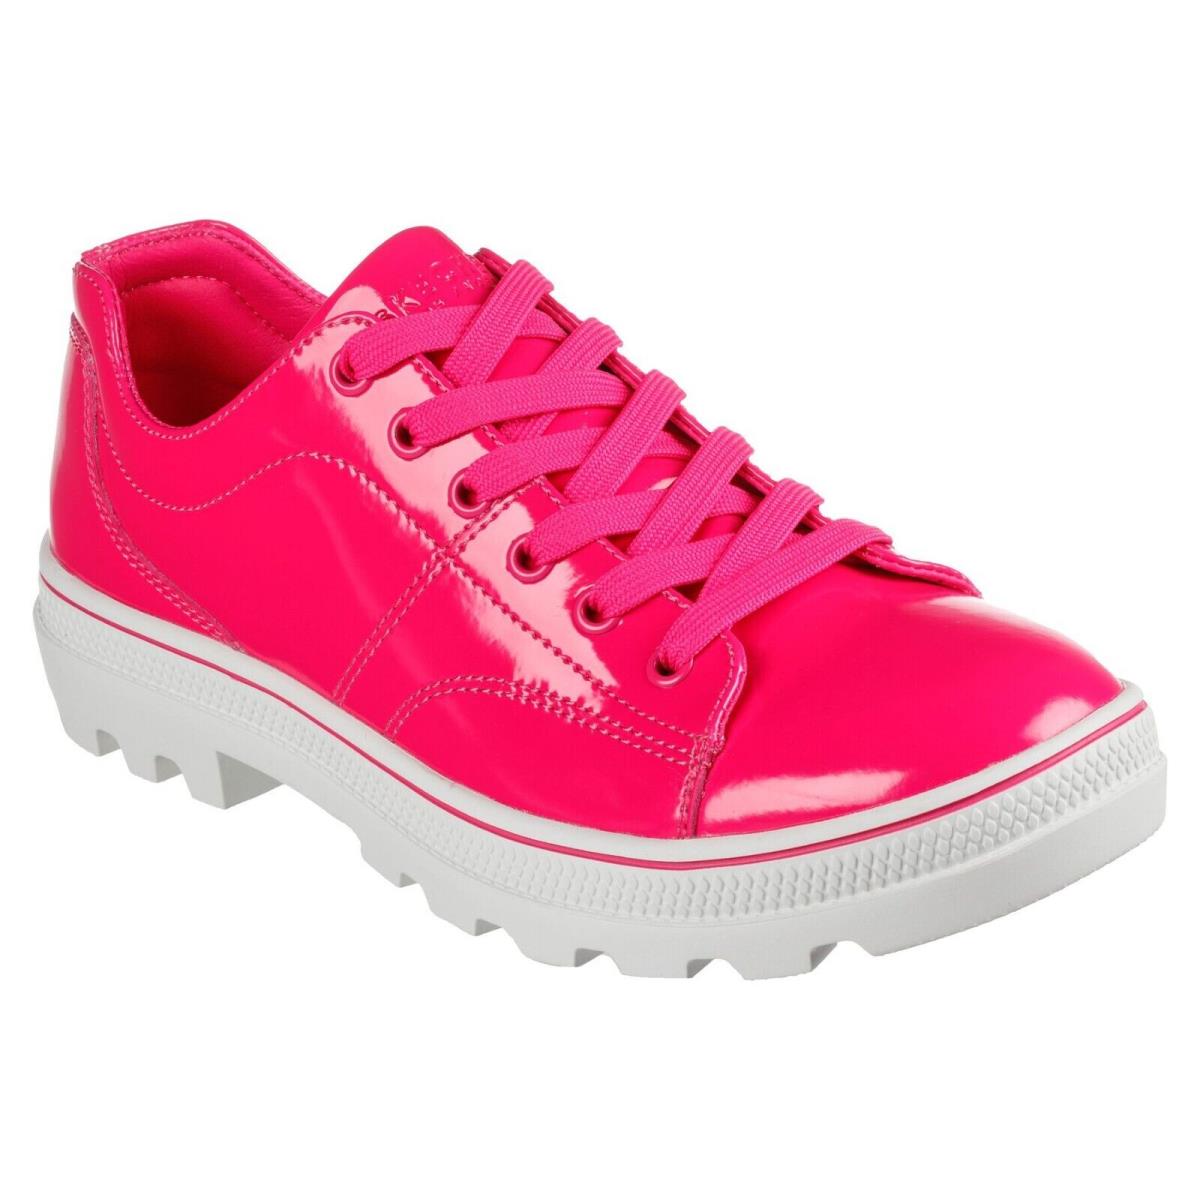 Skechers shoes Roadies - Hot Pink 5